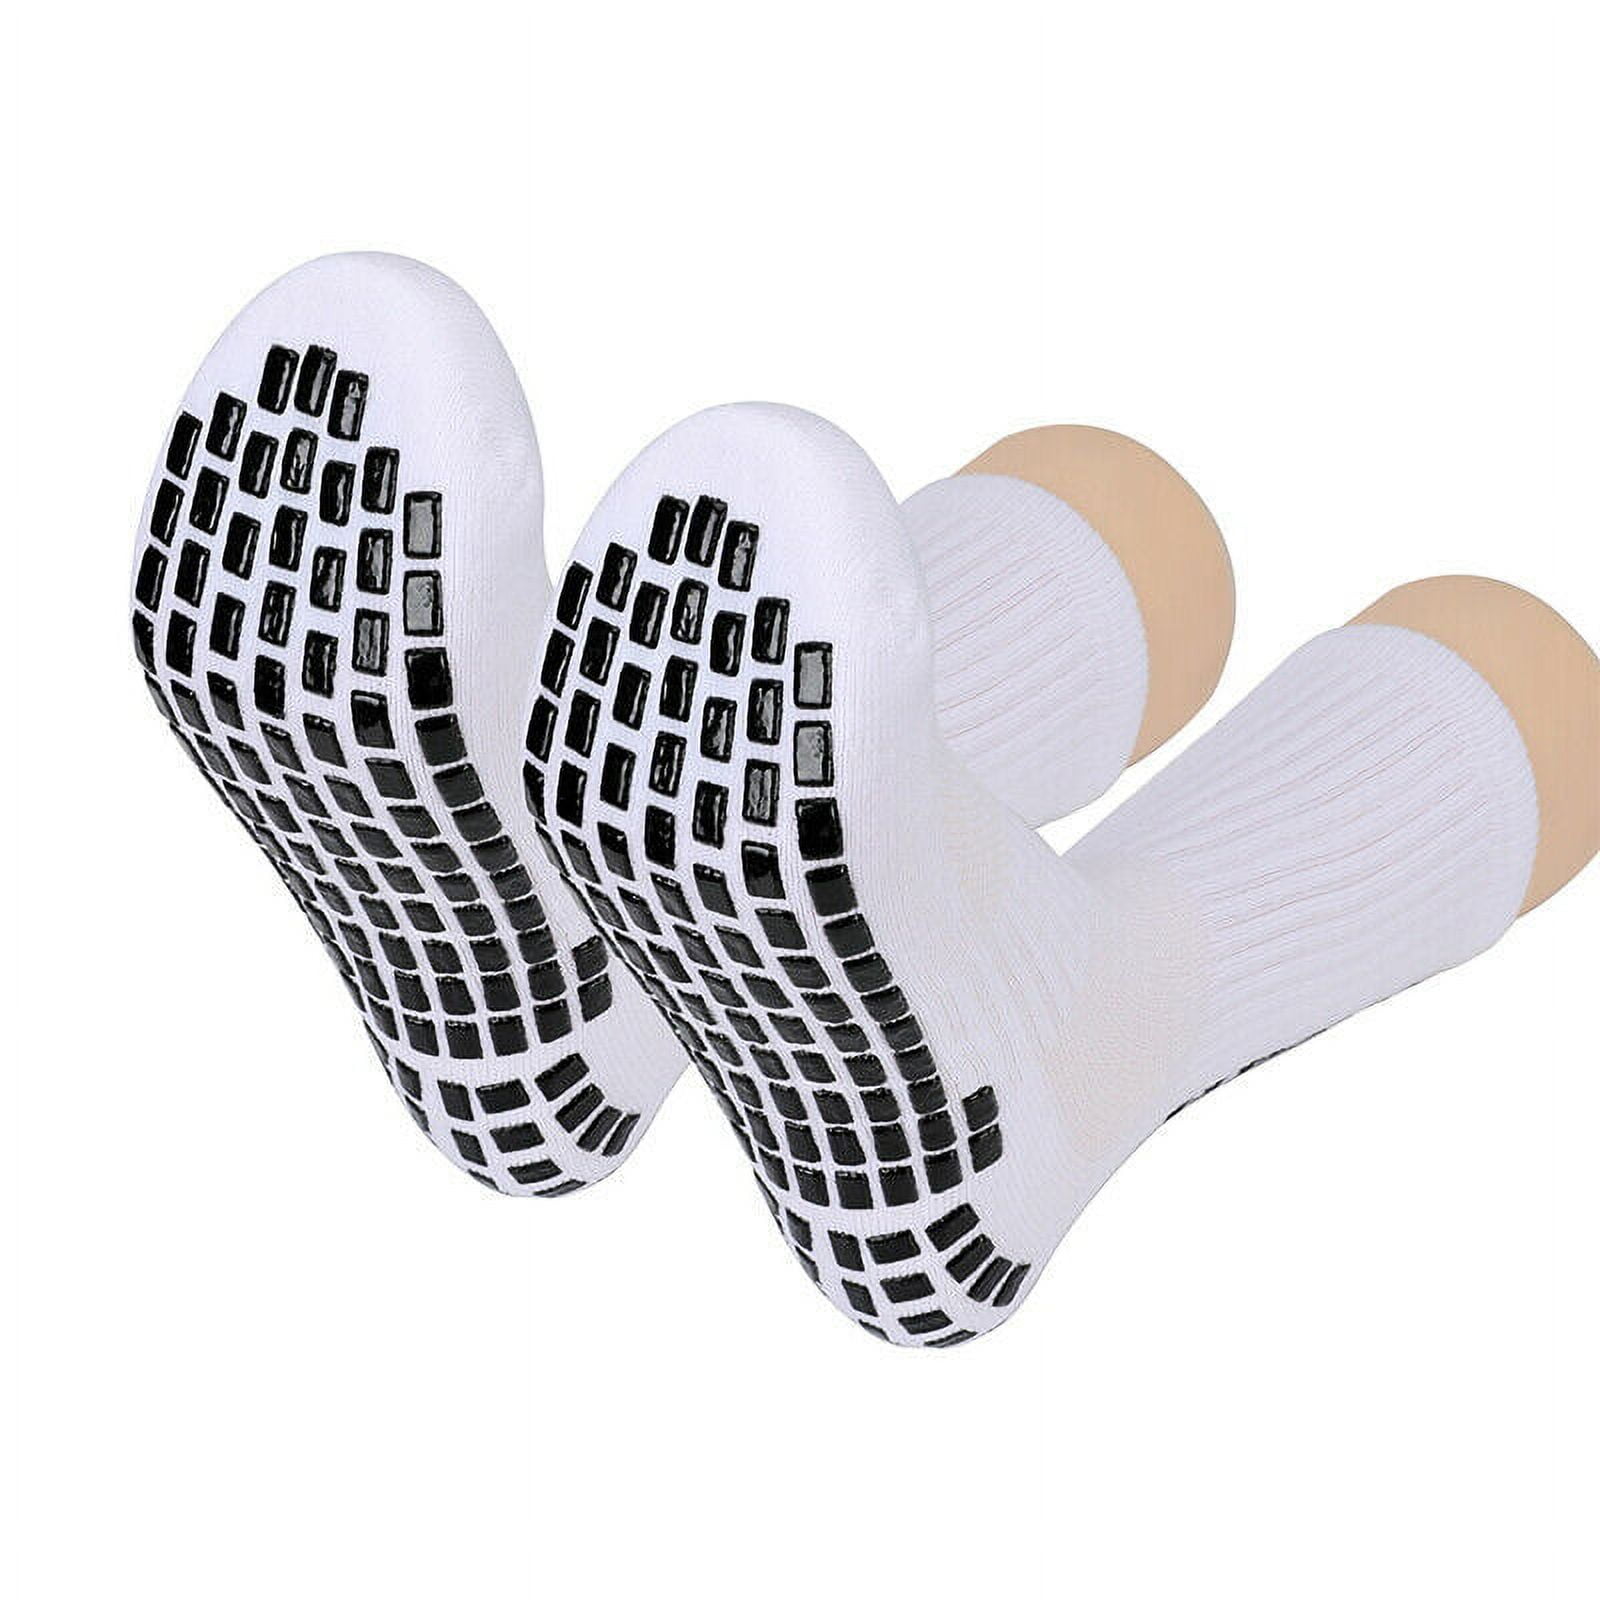 Men's Soccer Socks Anti Slip Non Slip Grip Pads for Football Basketball  Sports Grip Socks, 3 Pair 